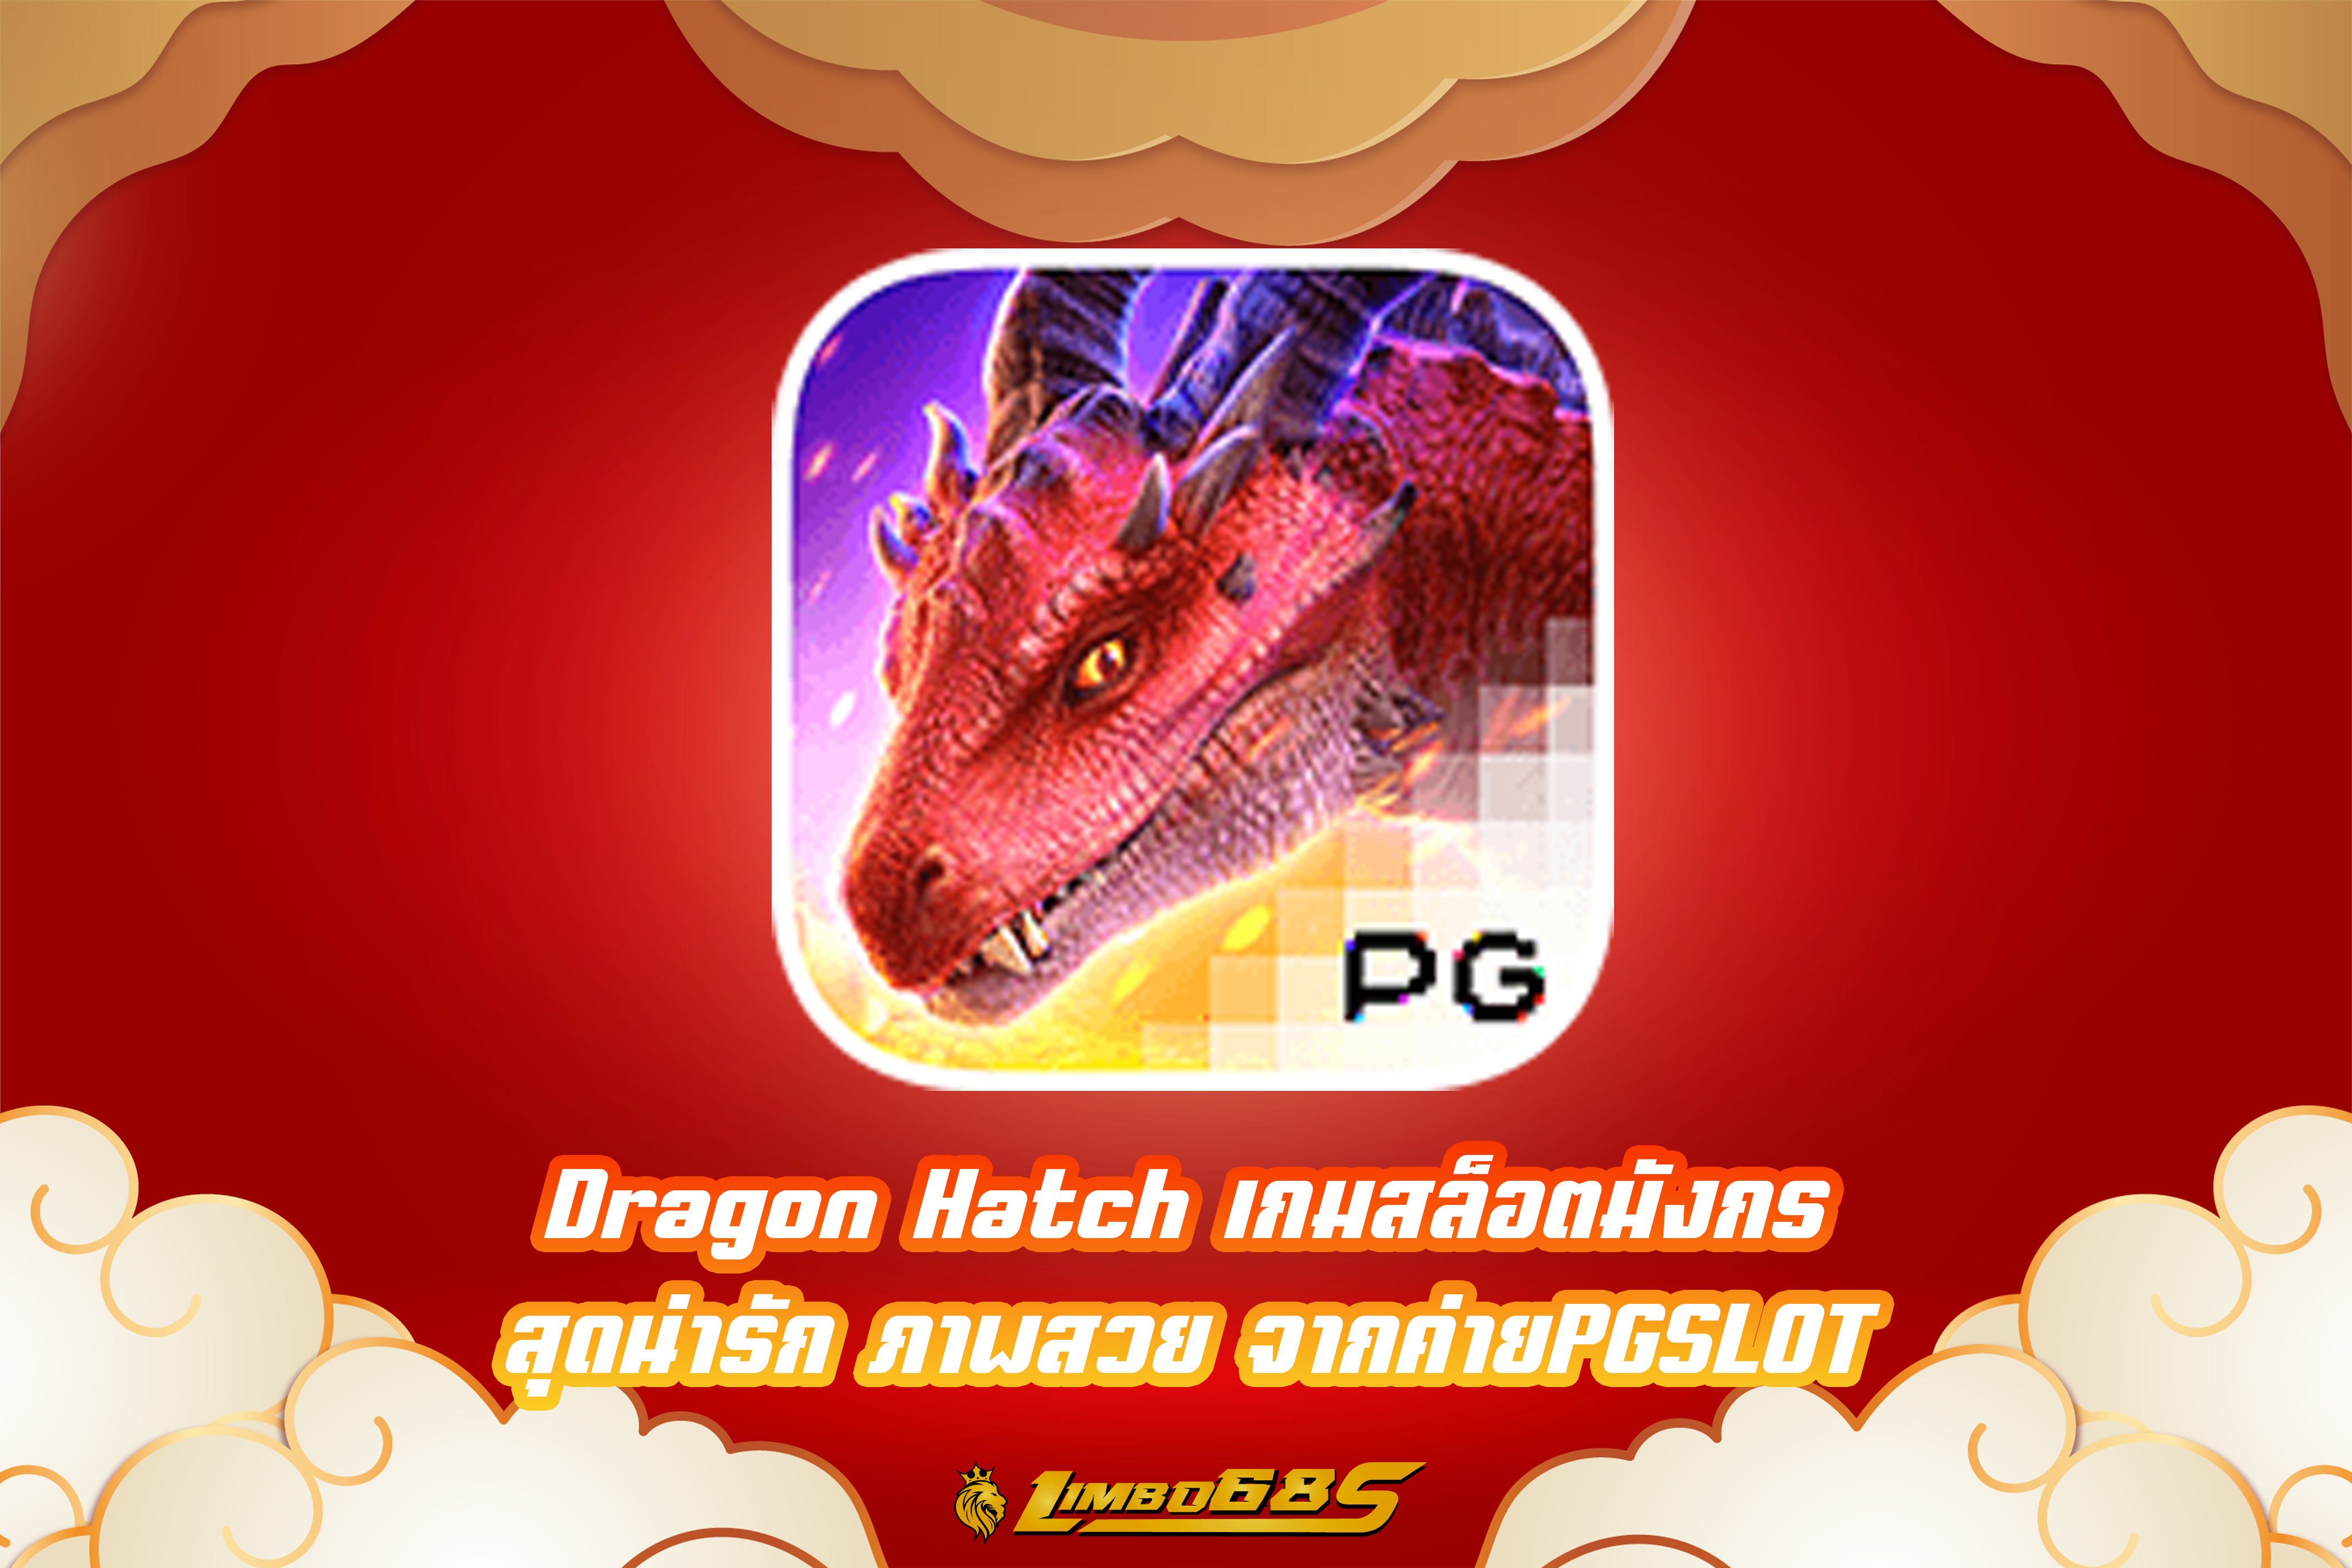 Dragon Hatch เกมสล็อตมังกร สุดน่ารัก ภาพสวย จากค่ายPGSLOT